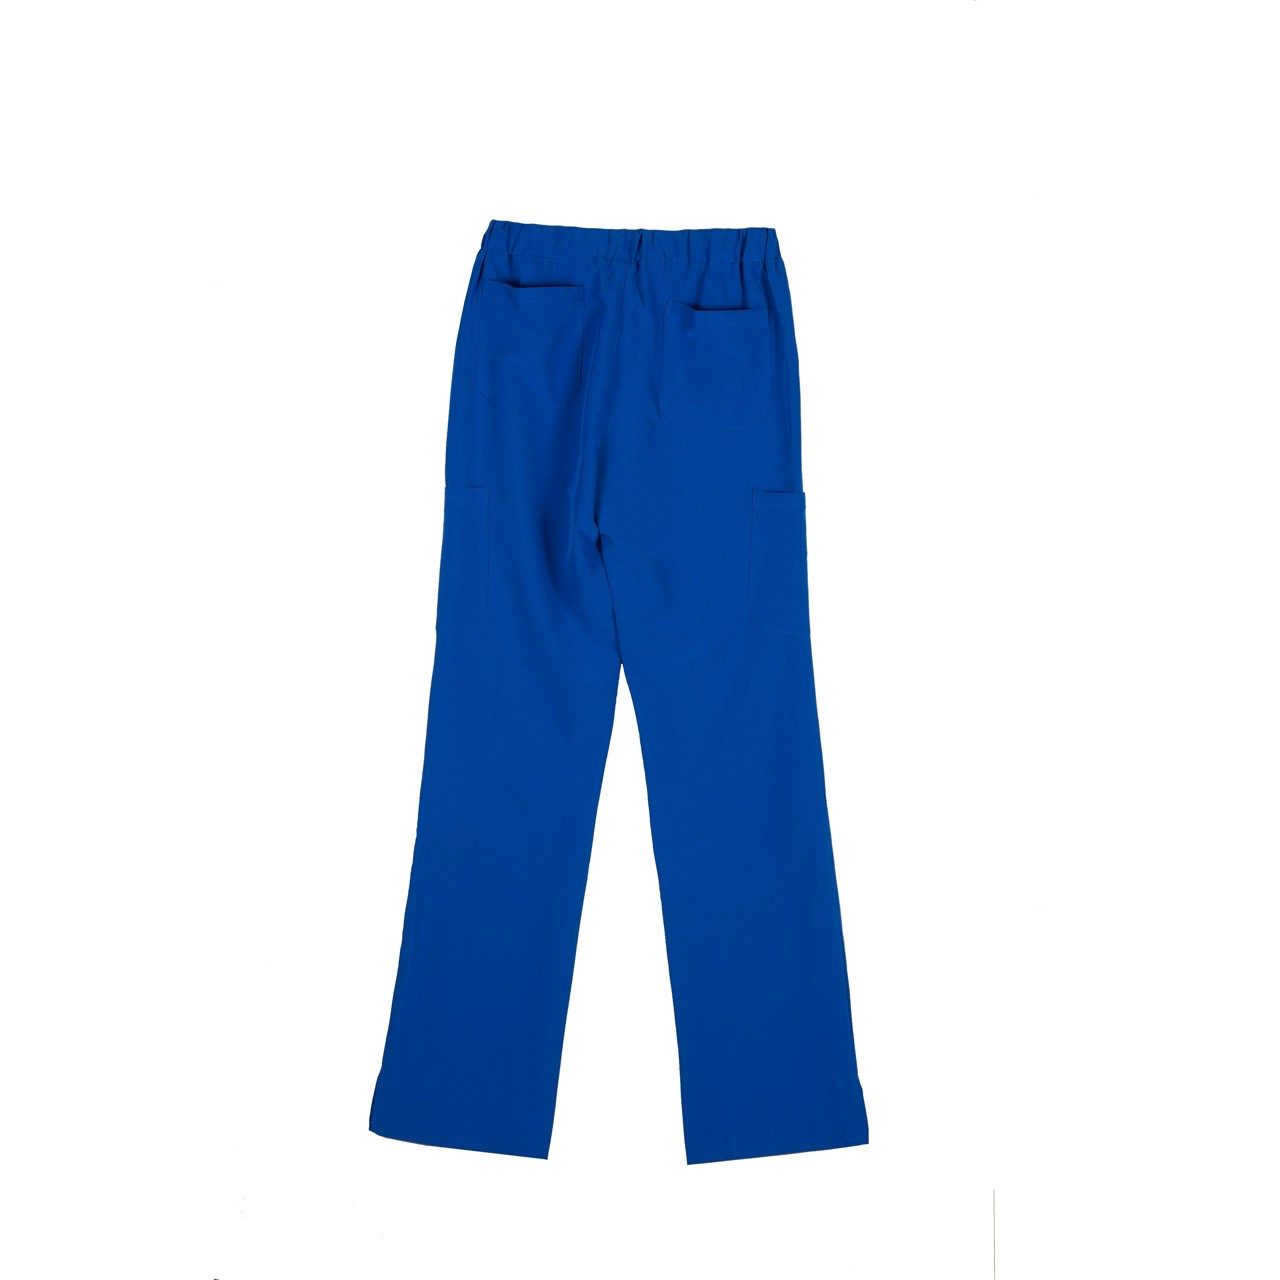 Ιατρική Στολή Γυναικεία Μπλούζα - Παντελόνι (Σετ) Stretch Μπλε